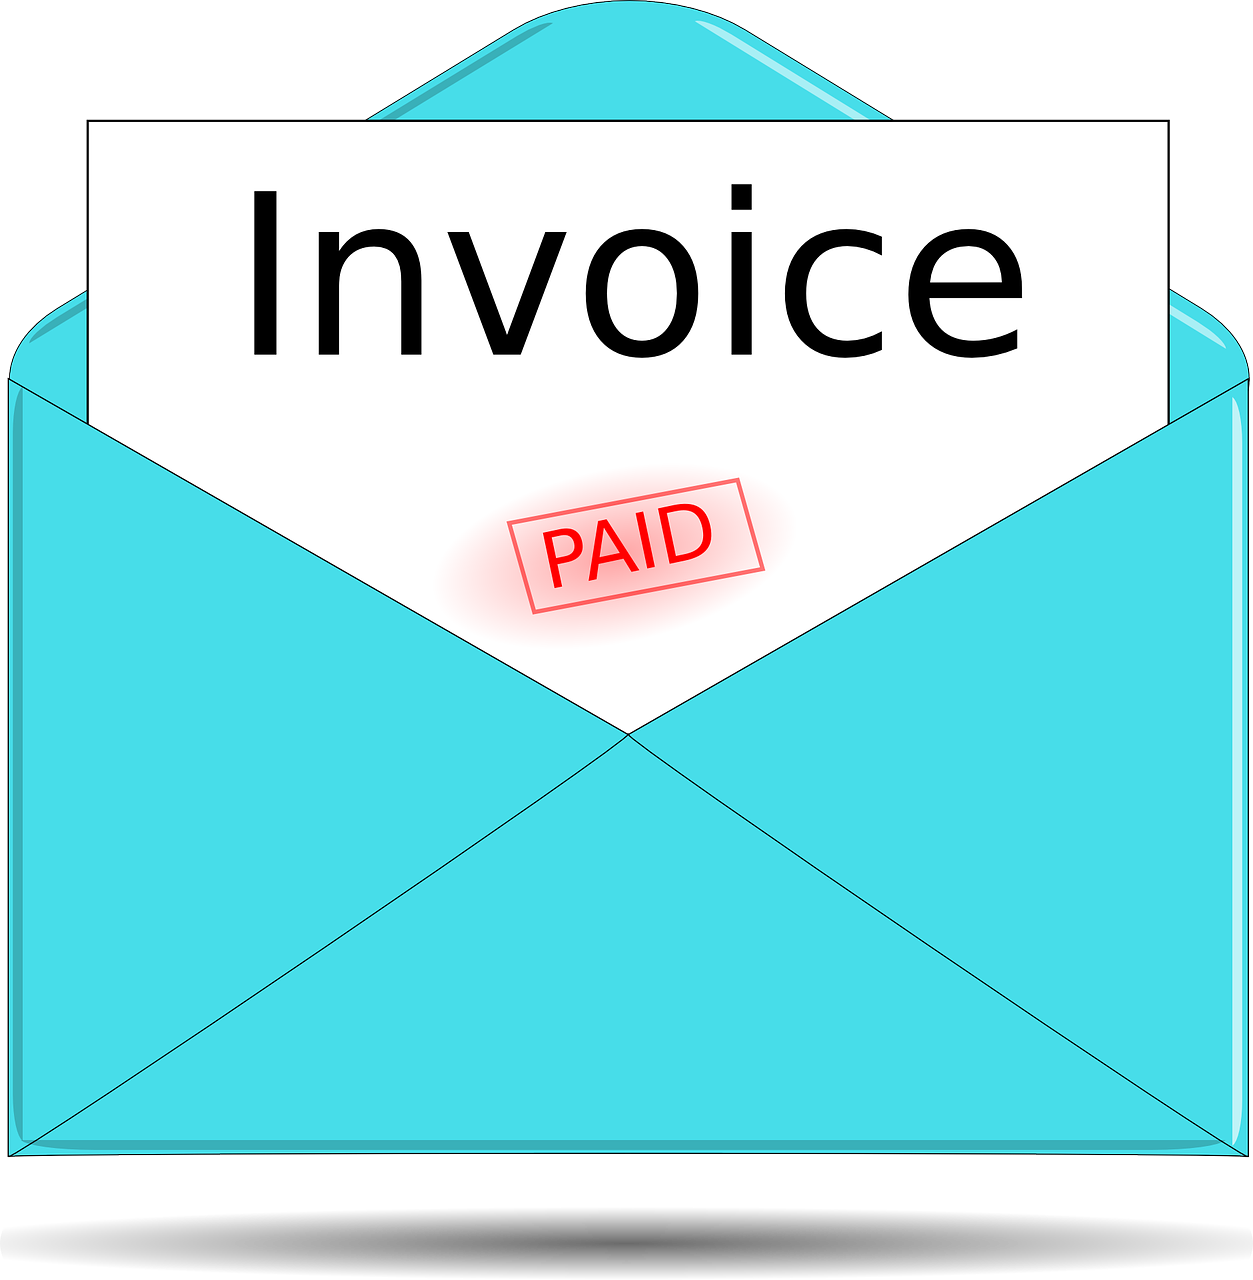 cara membuat invoice